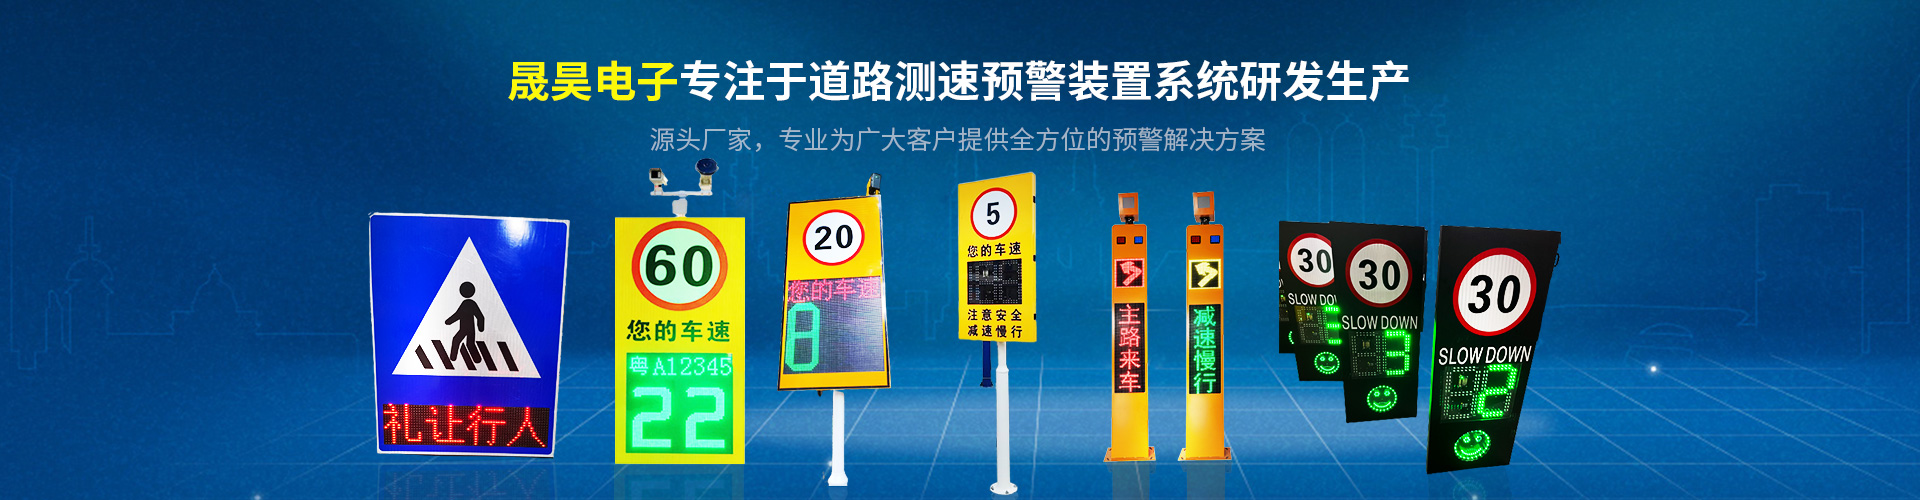 中国**物流排队系统应用案例